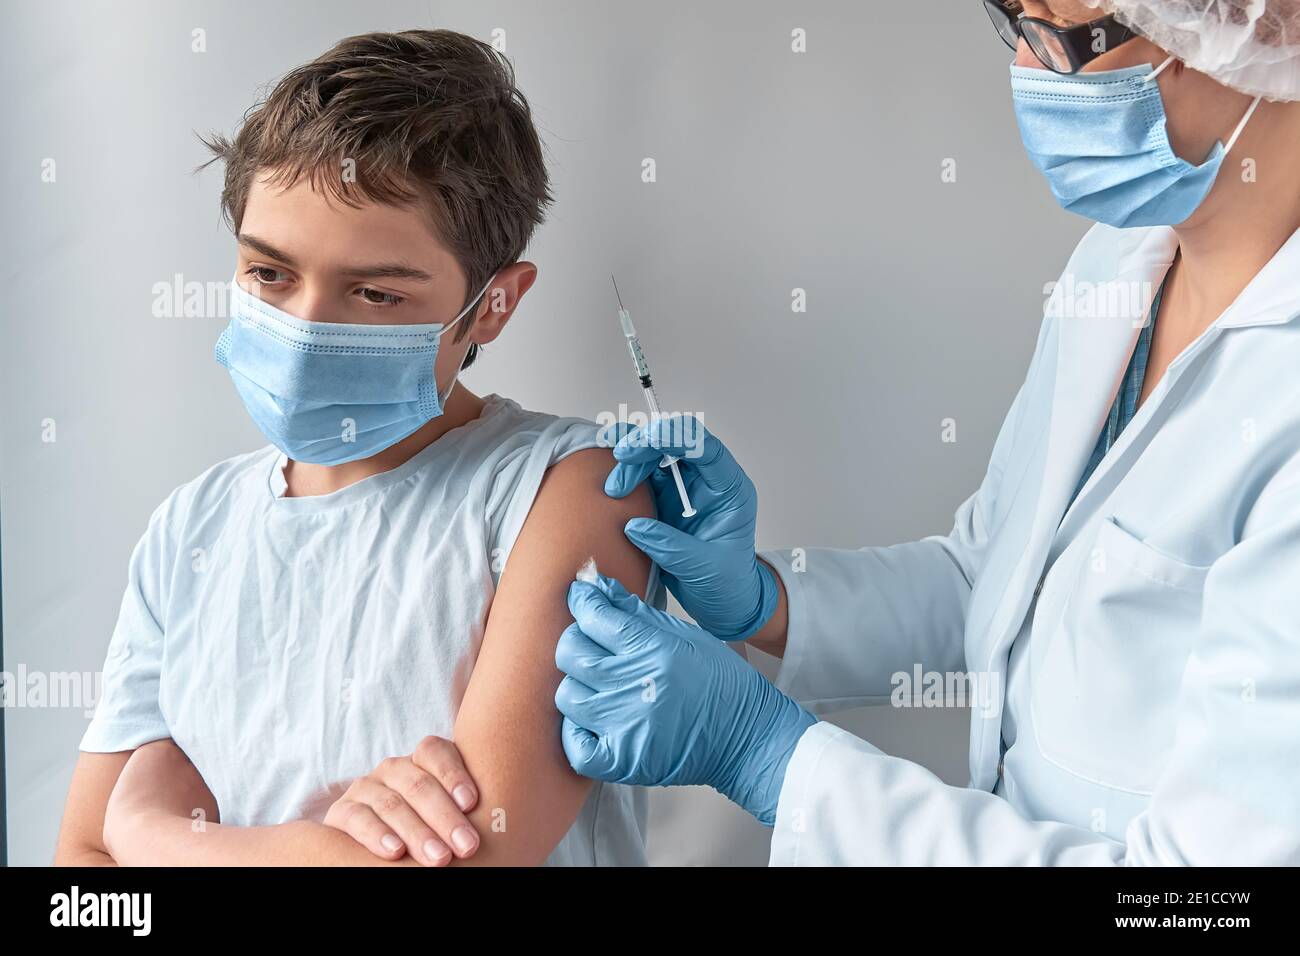 Primer plano en las manos con guantes con jeringa y hombro del paciente, niño adolescente. Covid 19, concepto de vacuna contra la gripe, el tétanos o el sarampión. Médico, médico o. Foto de stock